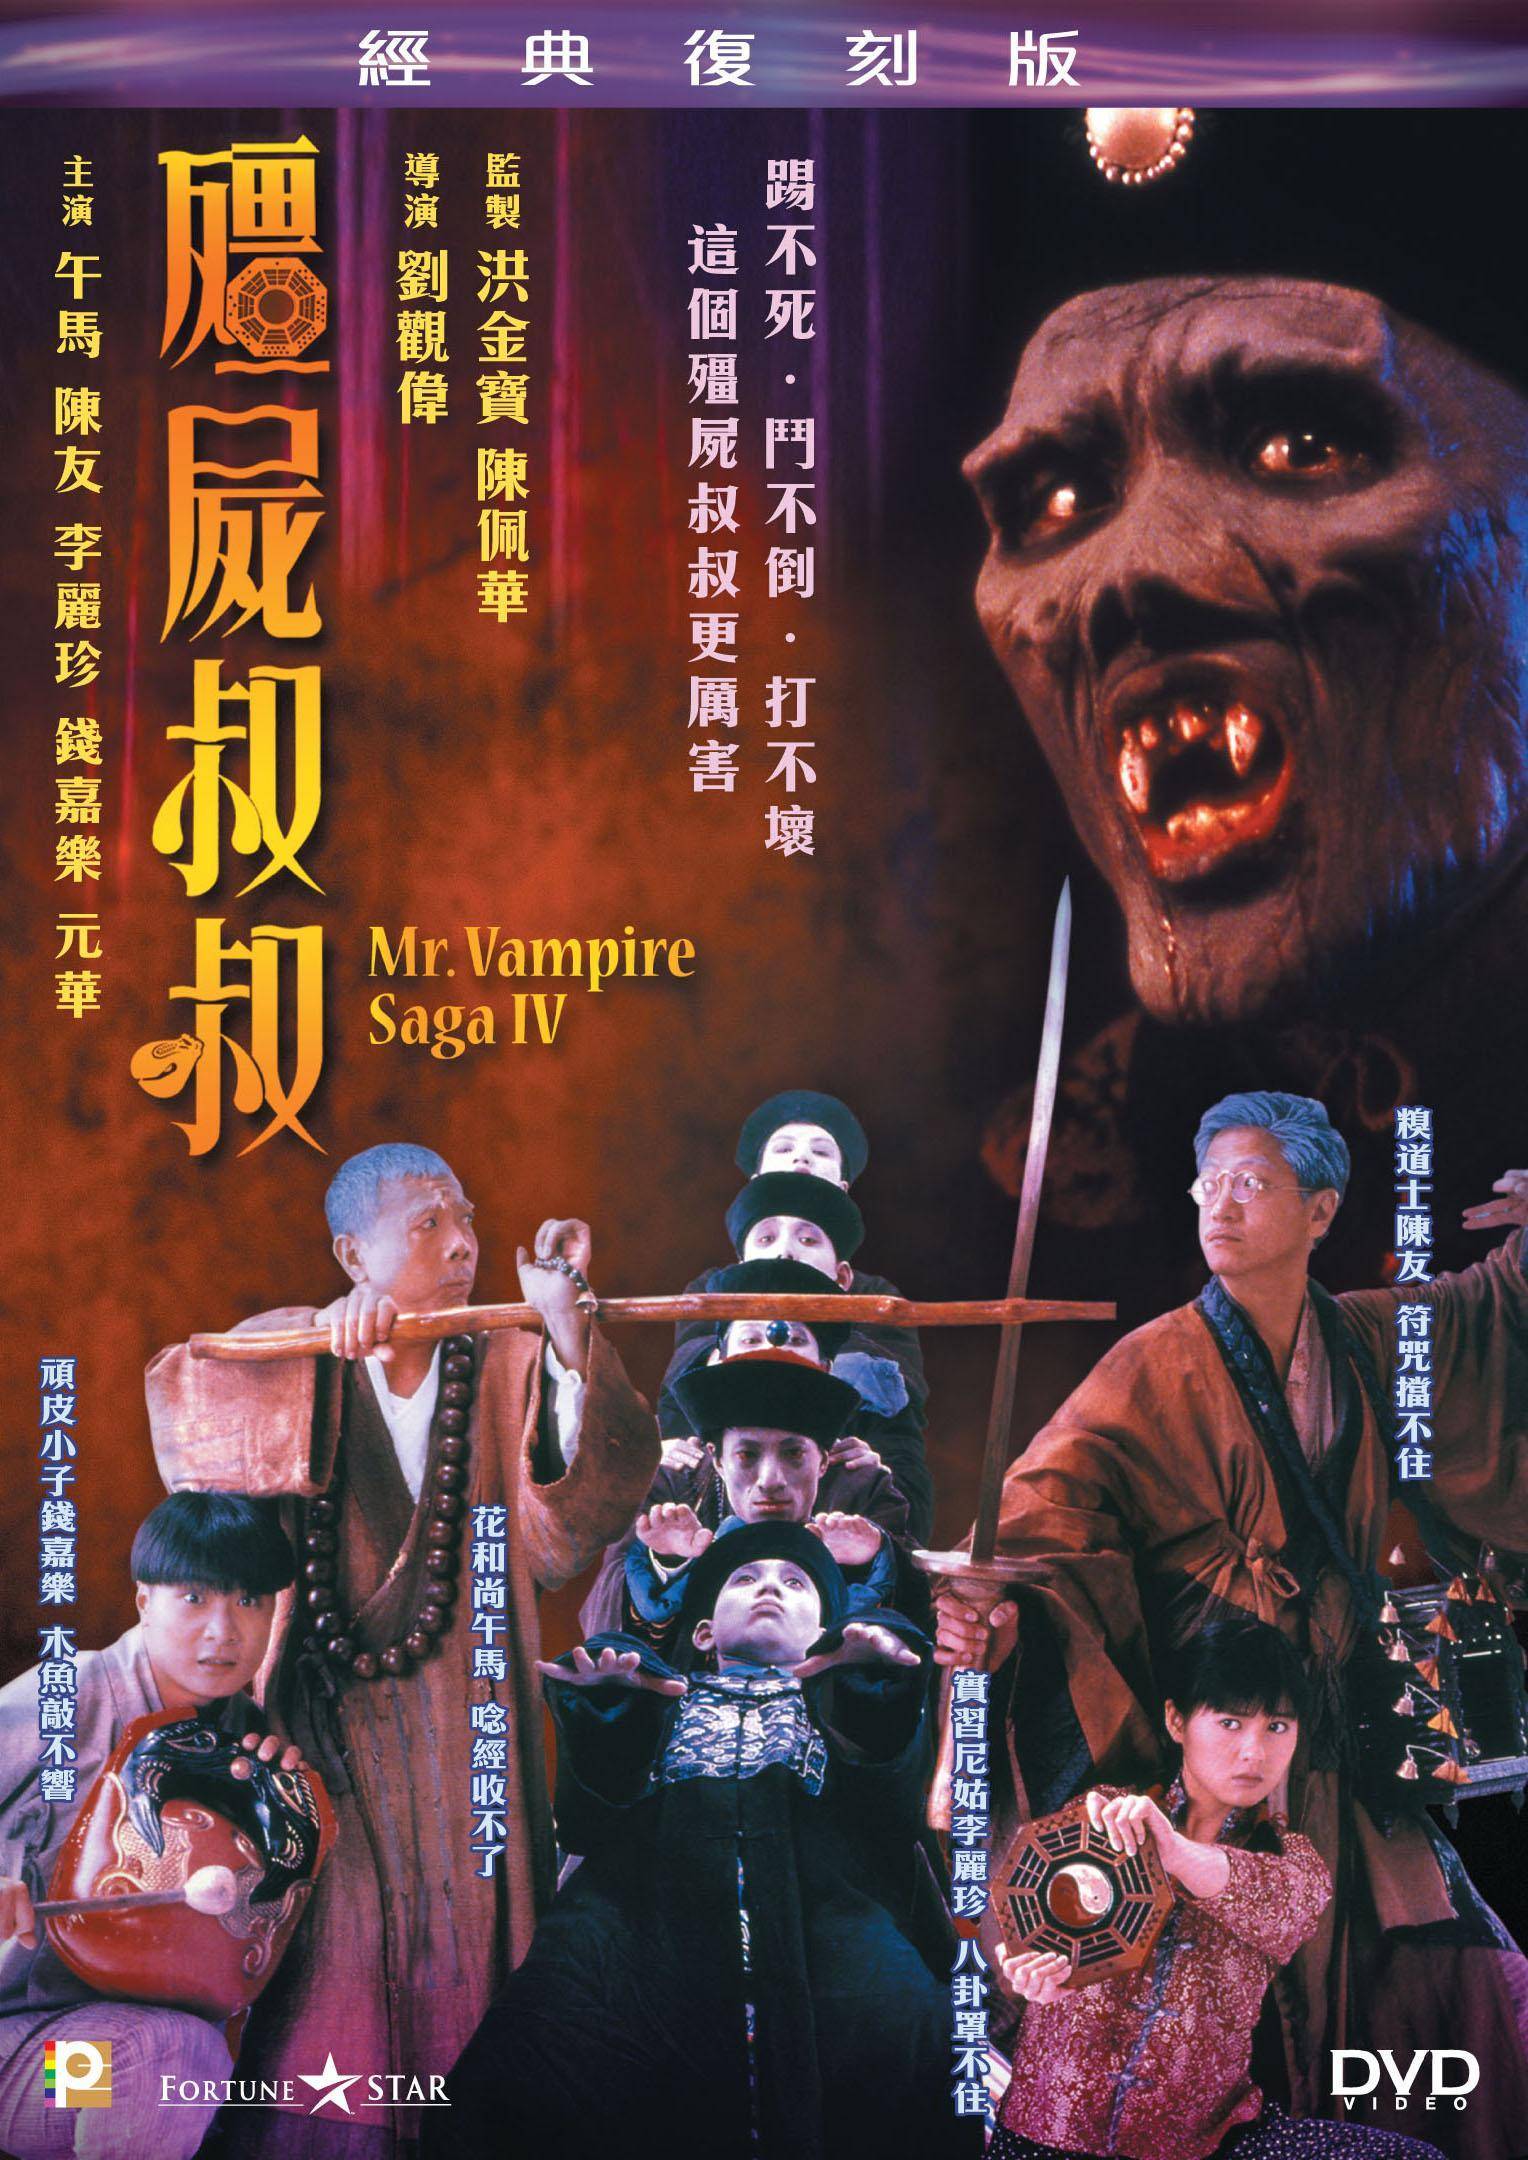 曾经风靡中国的僵尸片,你都看过哪些?